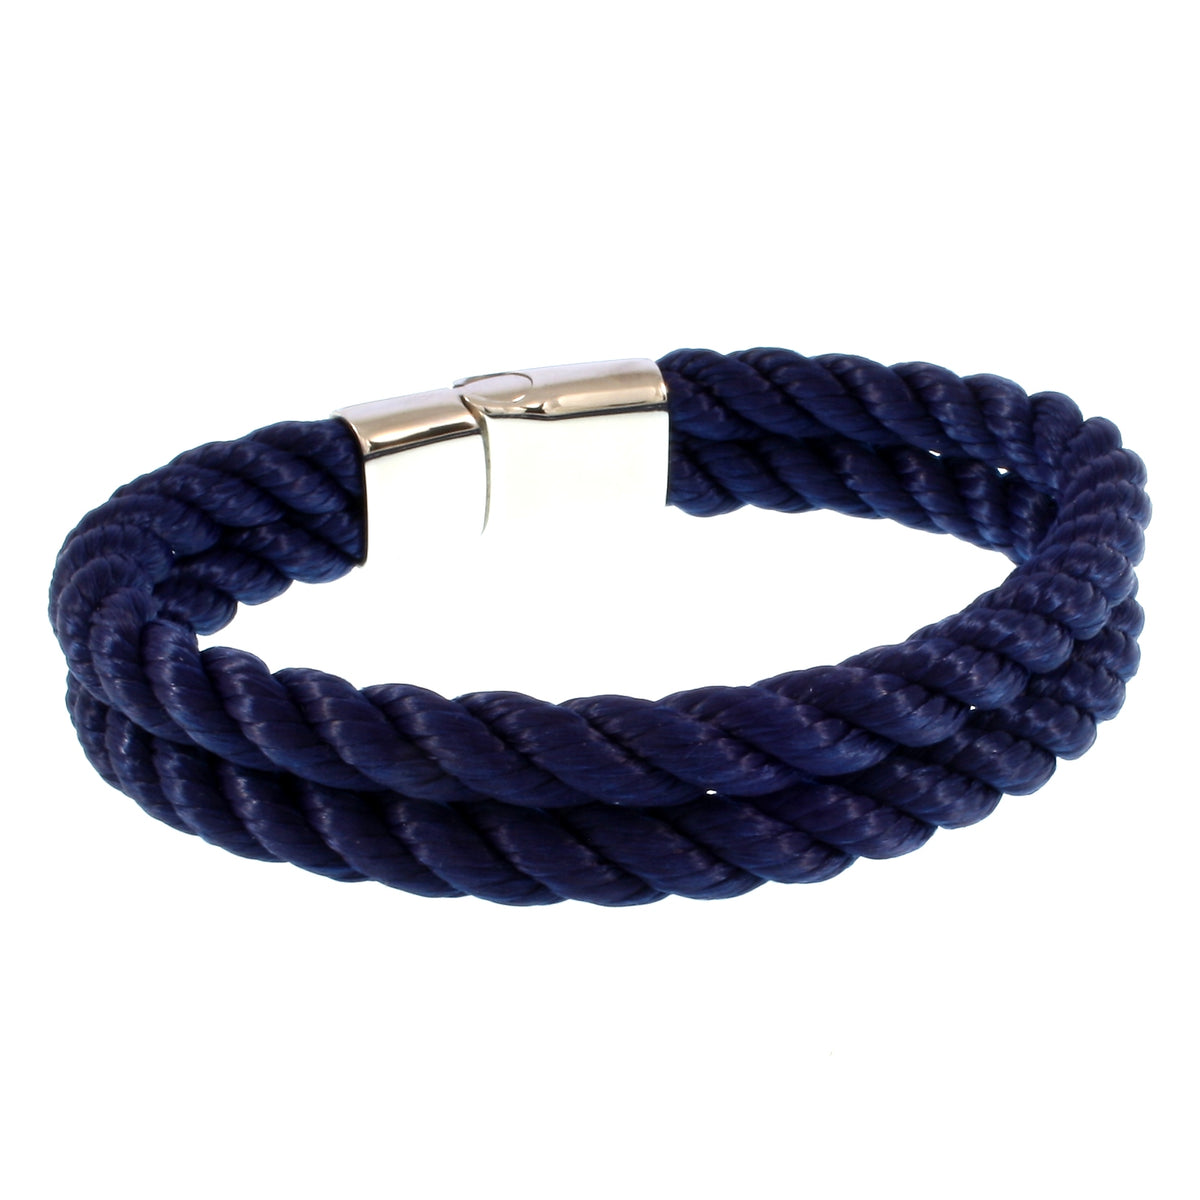 Herren-Segeltau-Armband-Tarifa-koenigsblau-geflochten-Kordel-Edelstahlverschluss-hinten-wavepirate-shop-k